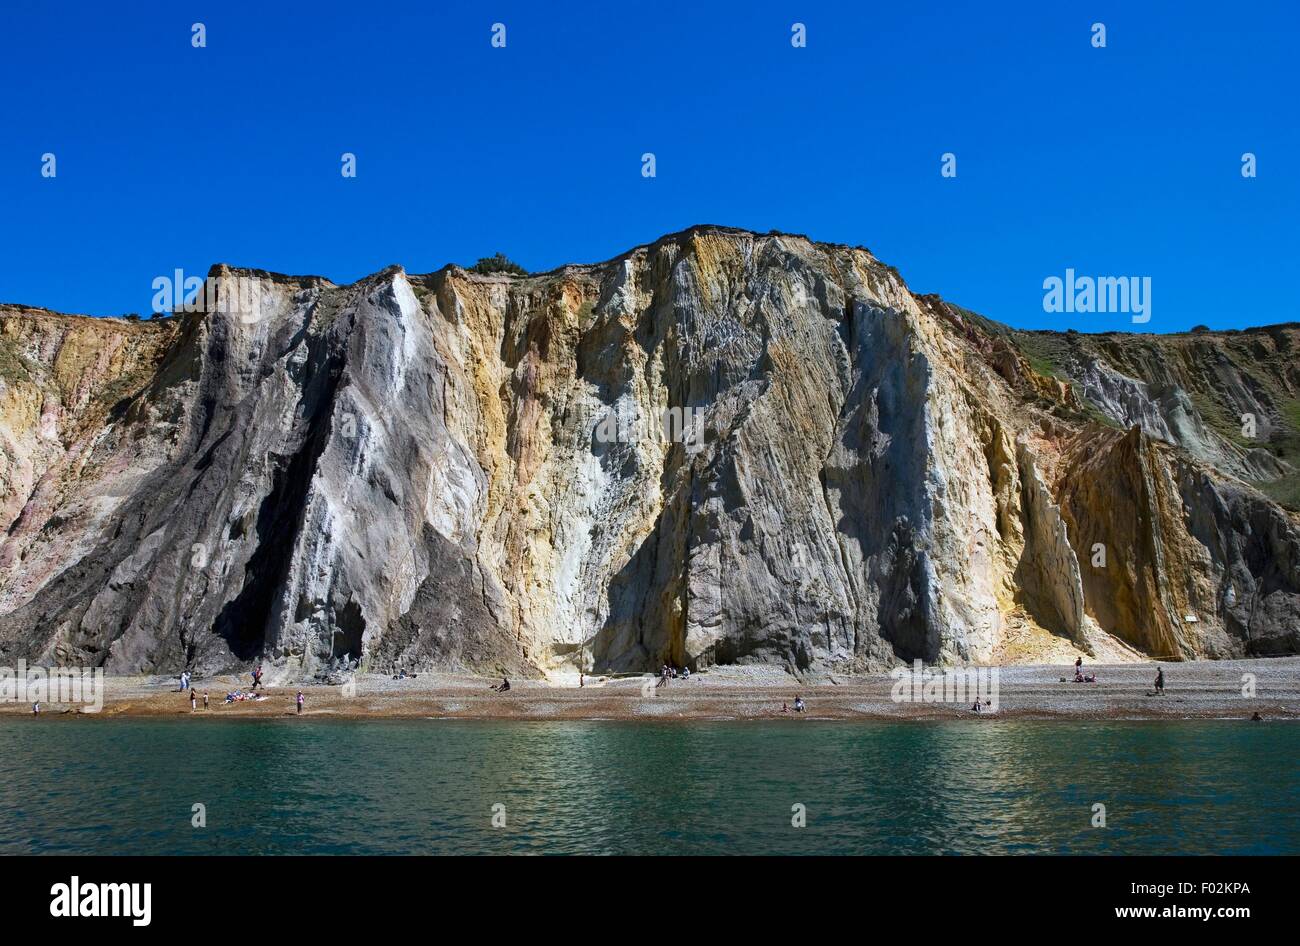 La baie d'alun, crique de sable à la pointe occidentale de l'île de Wight, Manche, Angleterre, Royaume-Uni. Banque D'Images